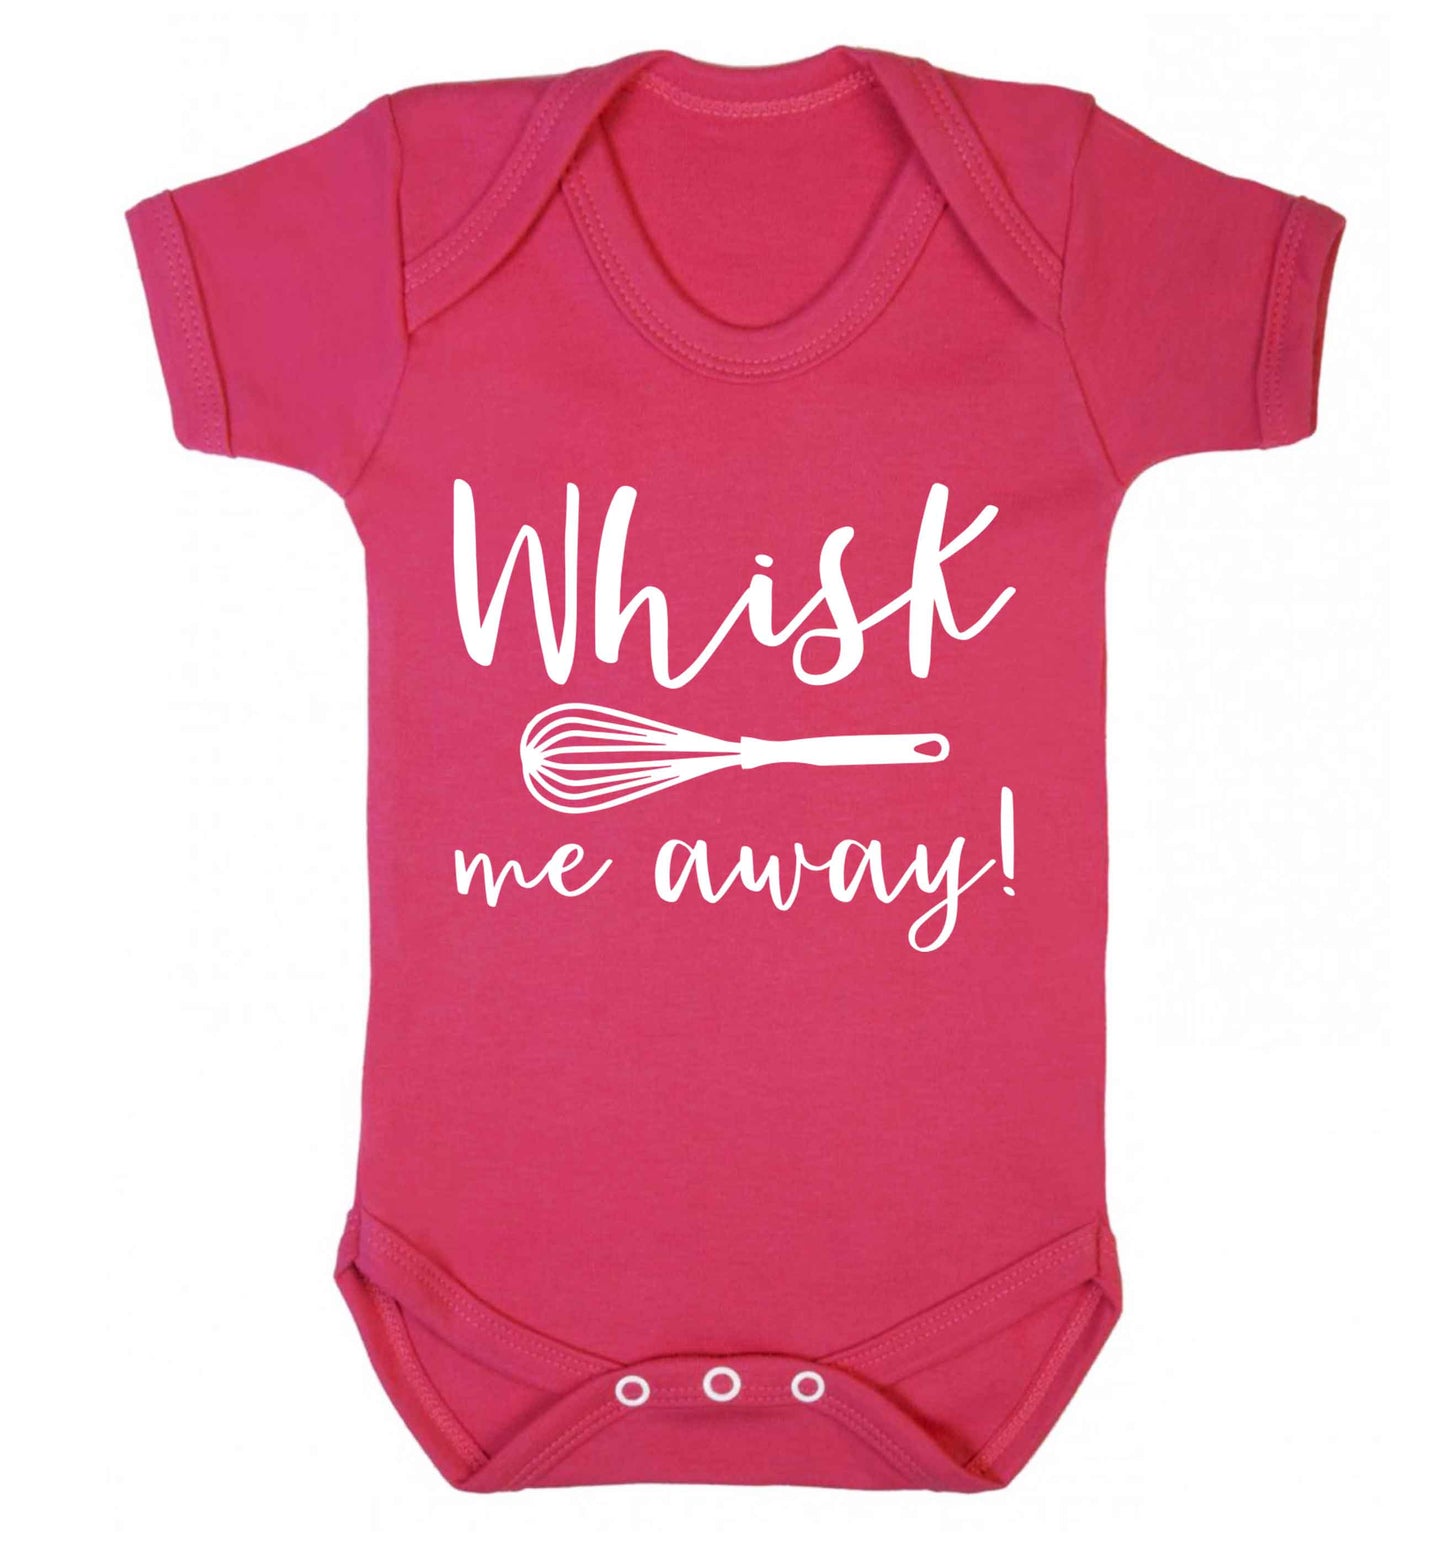 Whisk me away Baby Vest dark pink 18-24 months